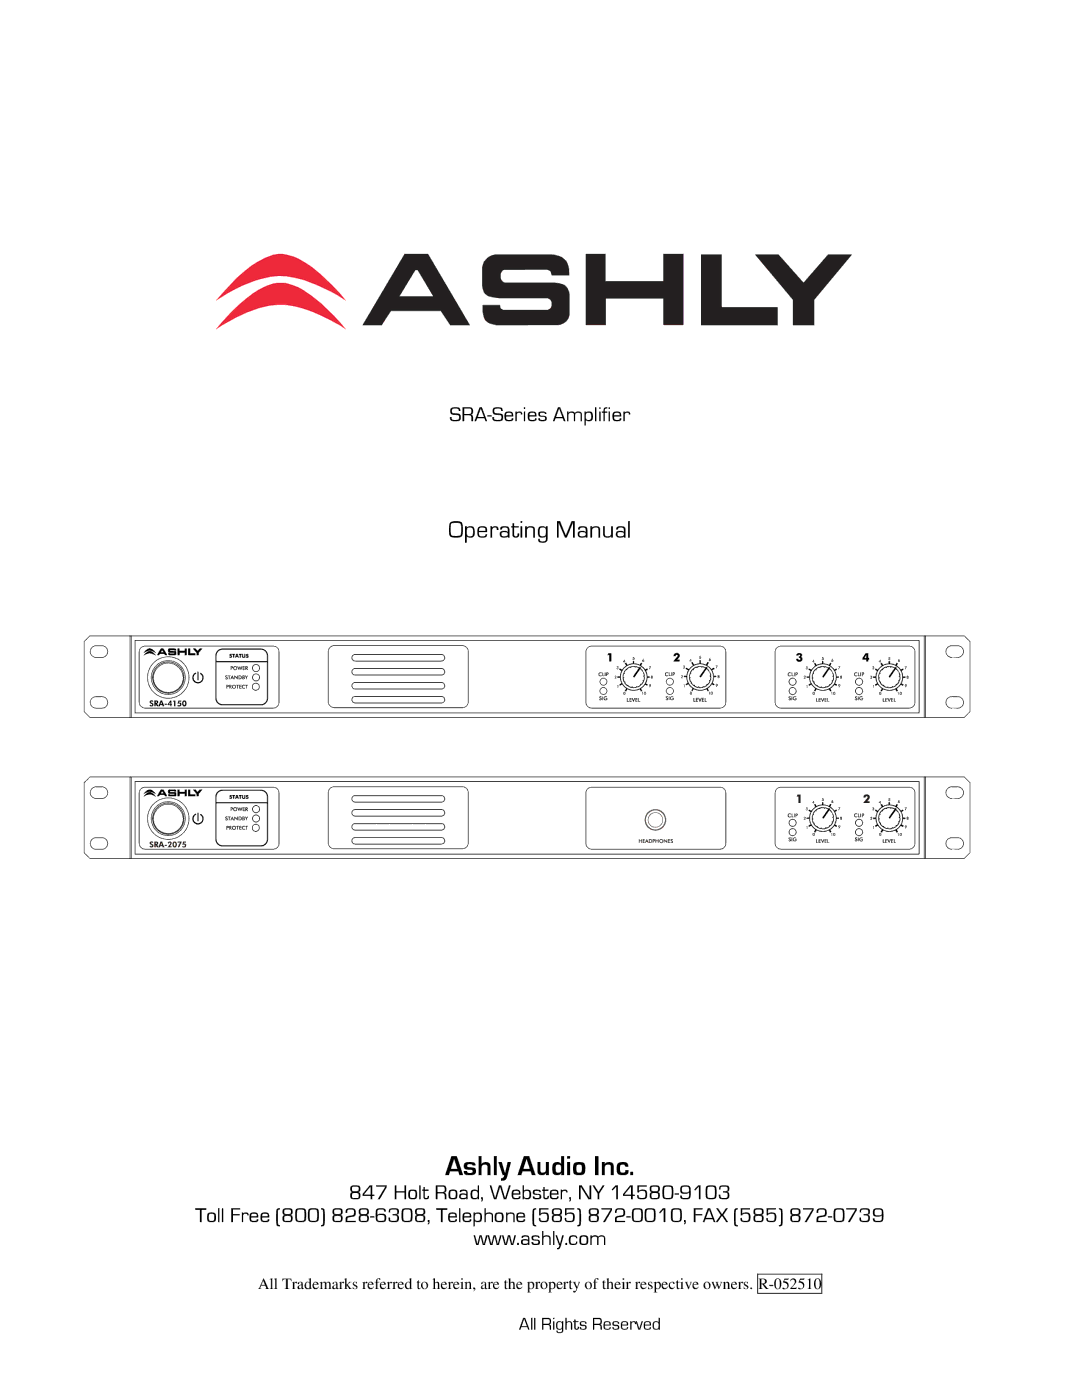 Ashly R-052510 manual Ashly Audio Inc 